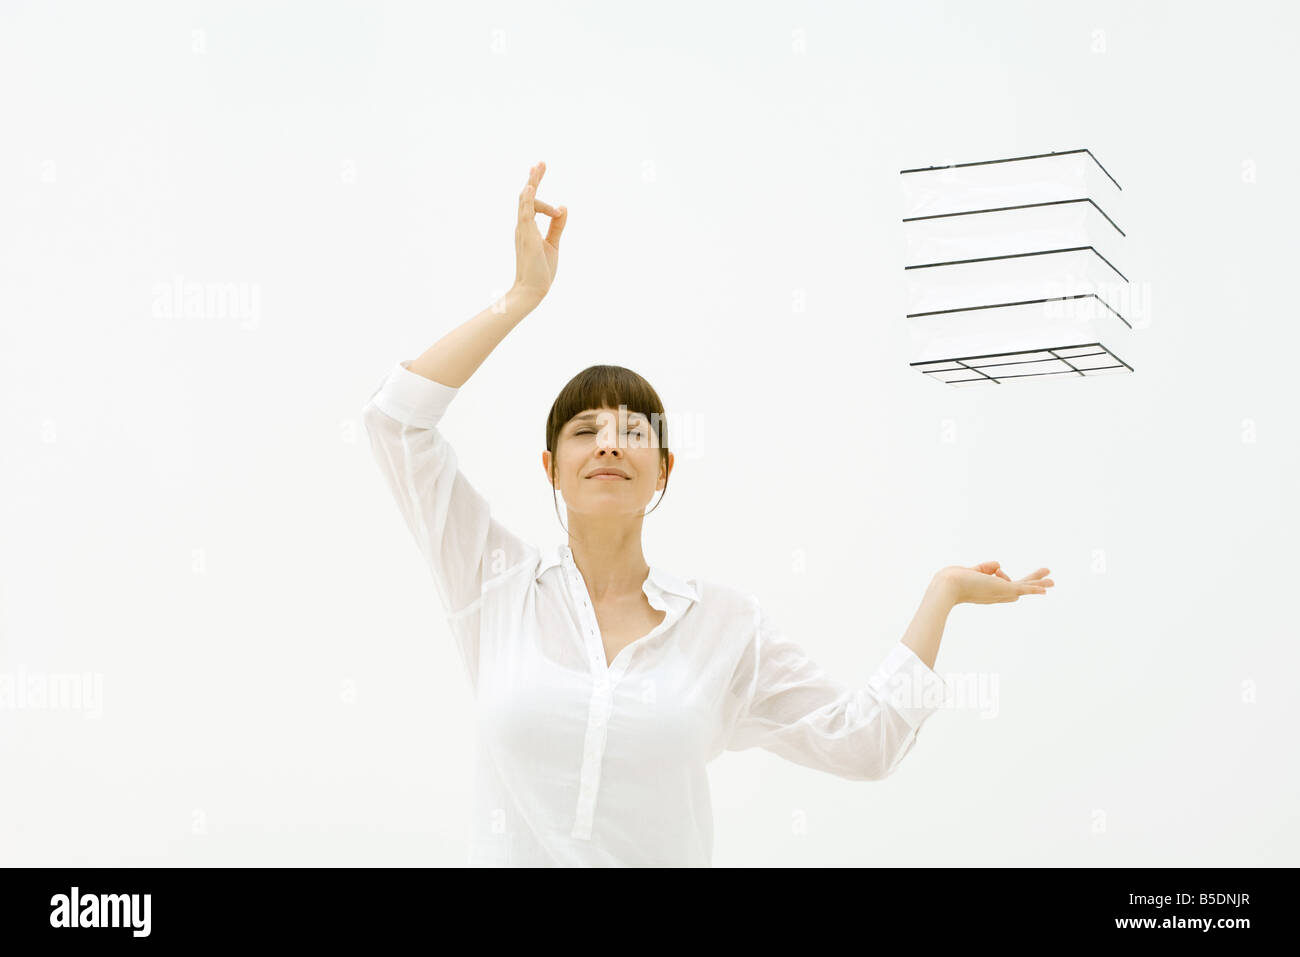 Woman raising arms, yeux clos, cube flottant dans l'air Banque D'Images